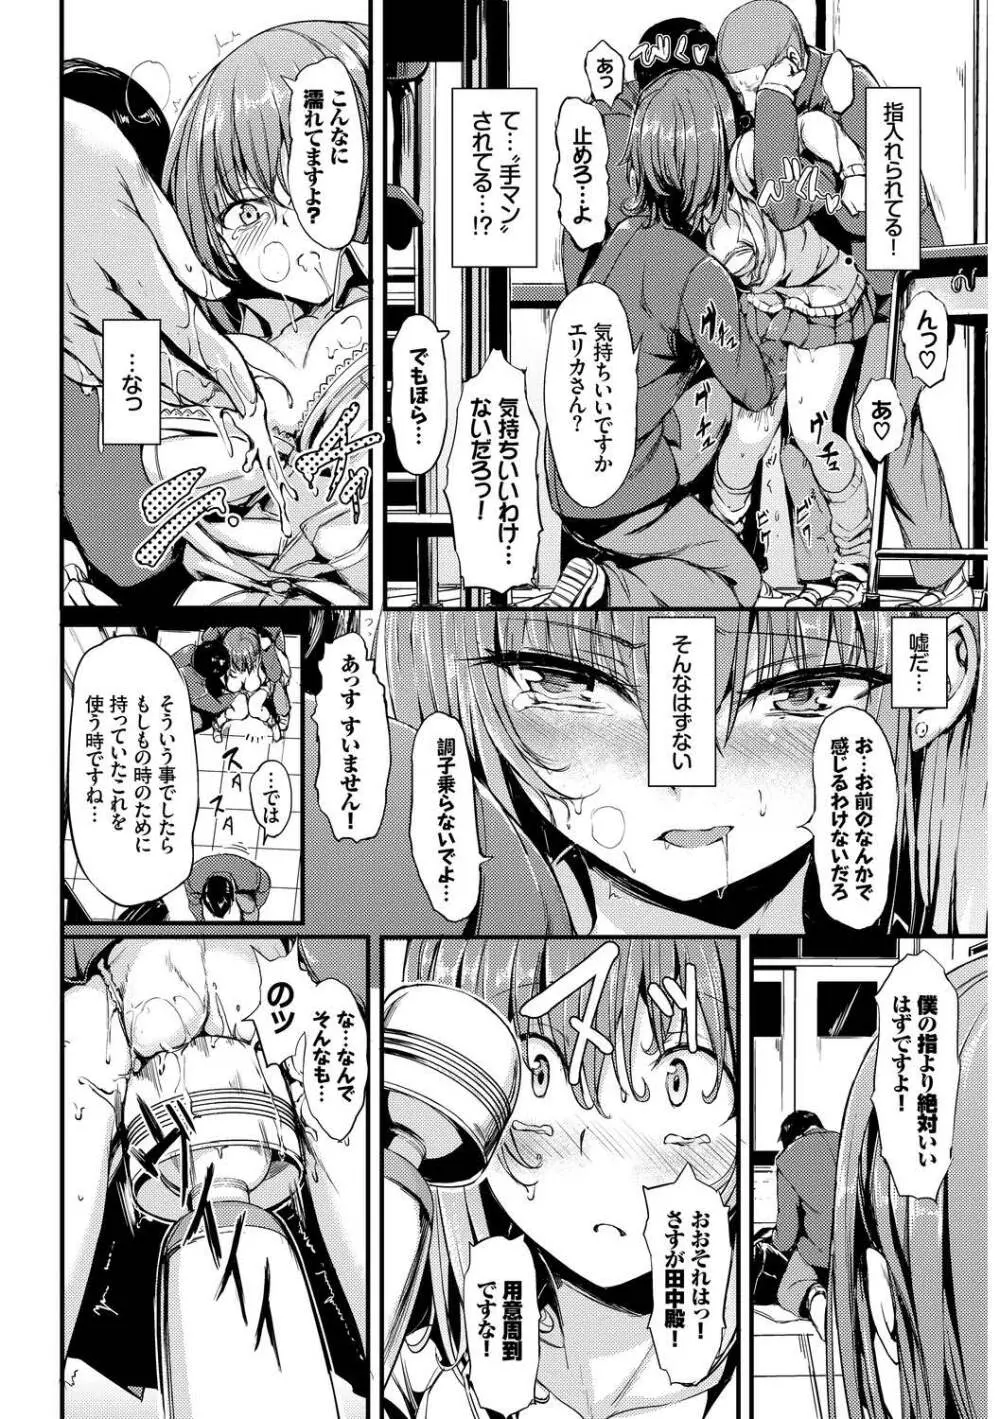 SEX中毒ッ!マジヤバ超絶ビッチ! Vol.10 14ページ